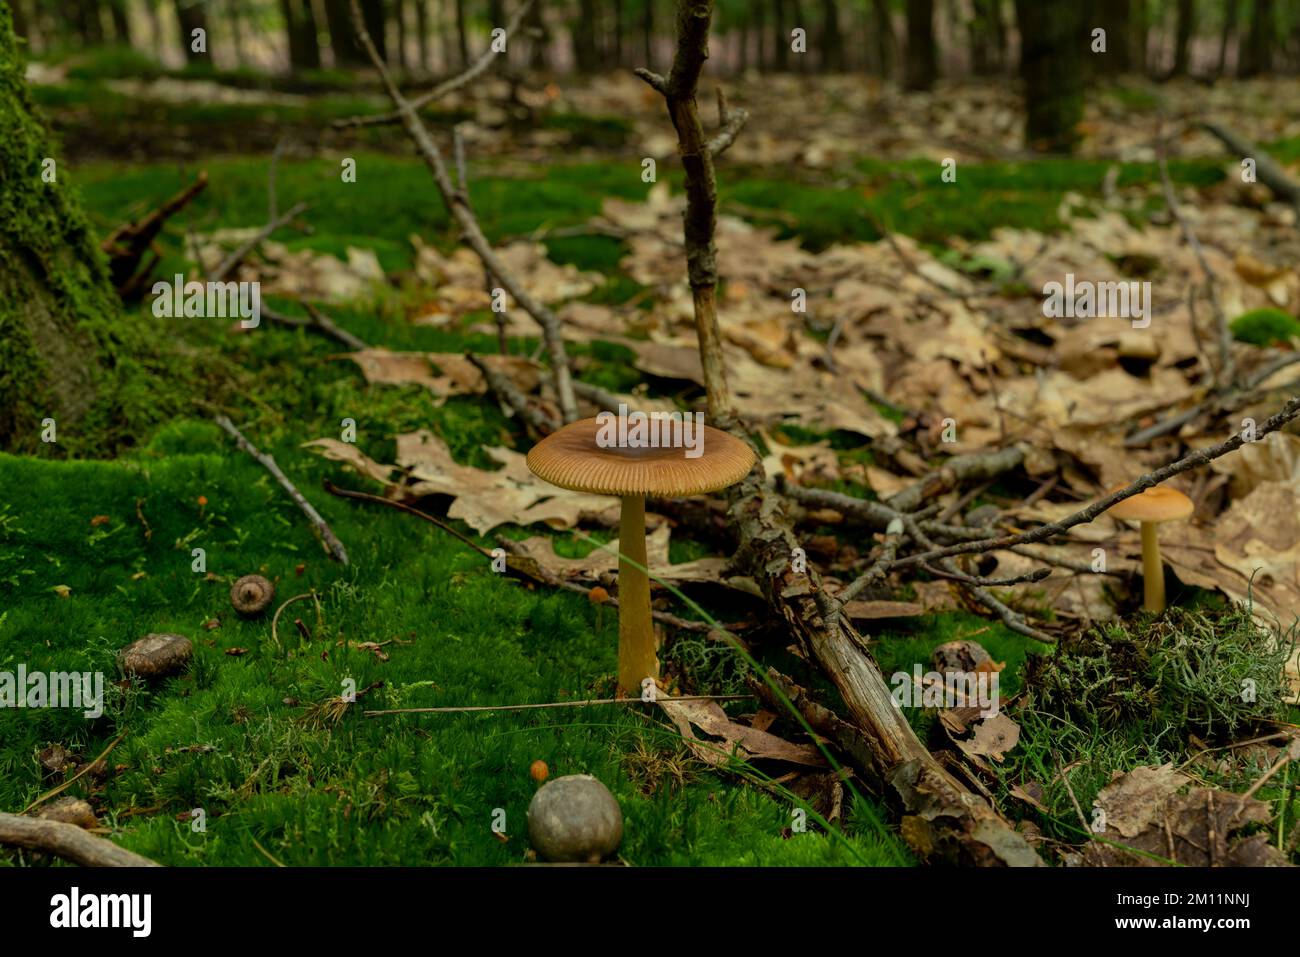 Fungo velenoso, piccolo fungo velenoso marrone nella foresta, cresciuto su muschio Foto Stock